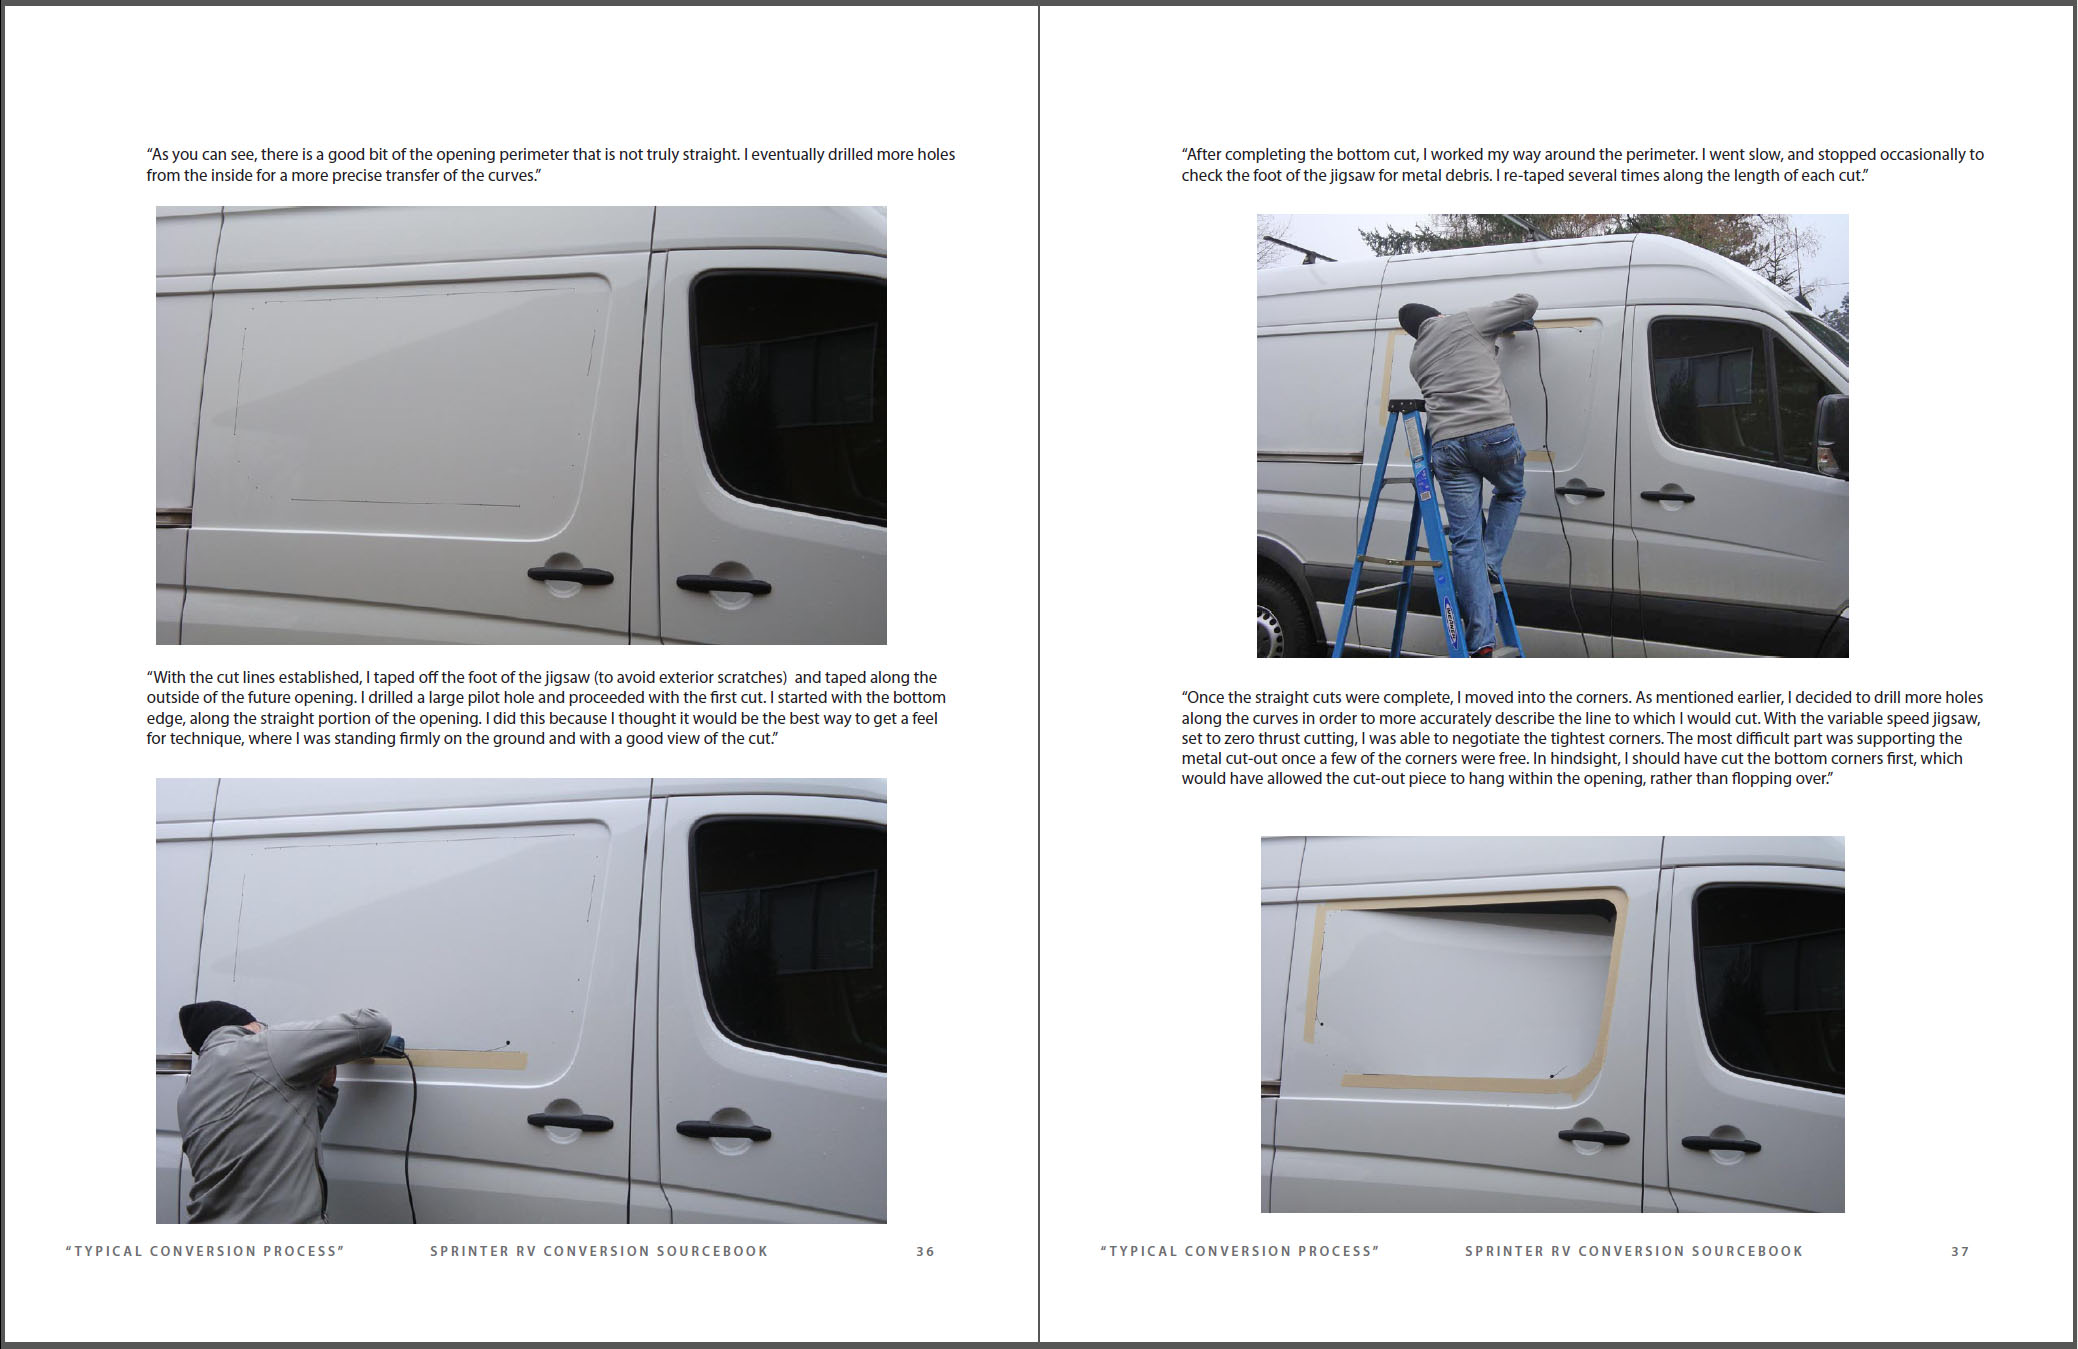 DIY Van Conversion: Pros and Cons of a Mercedes Benz Sprinter Van